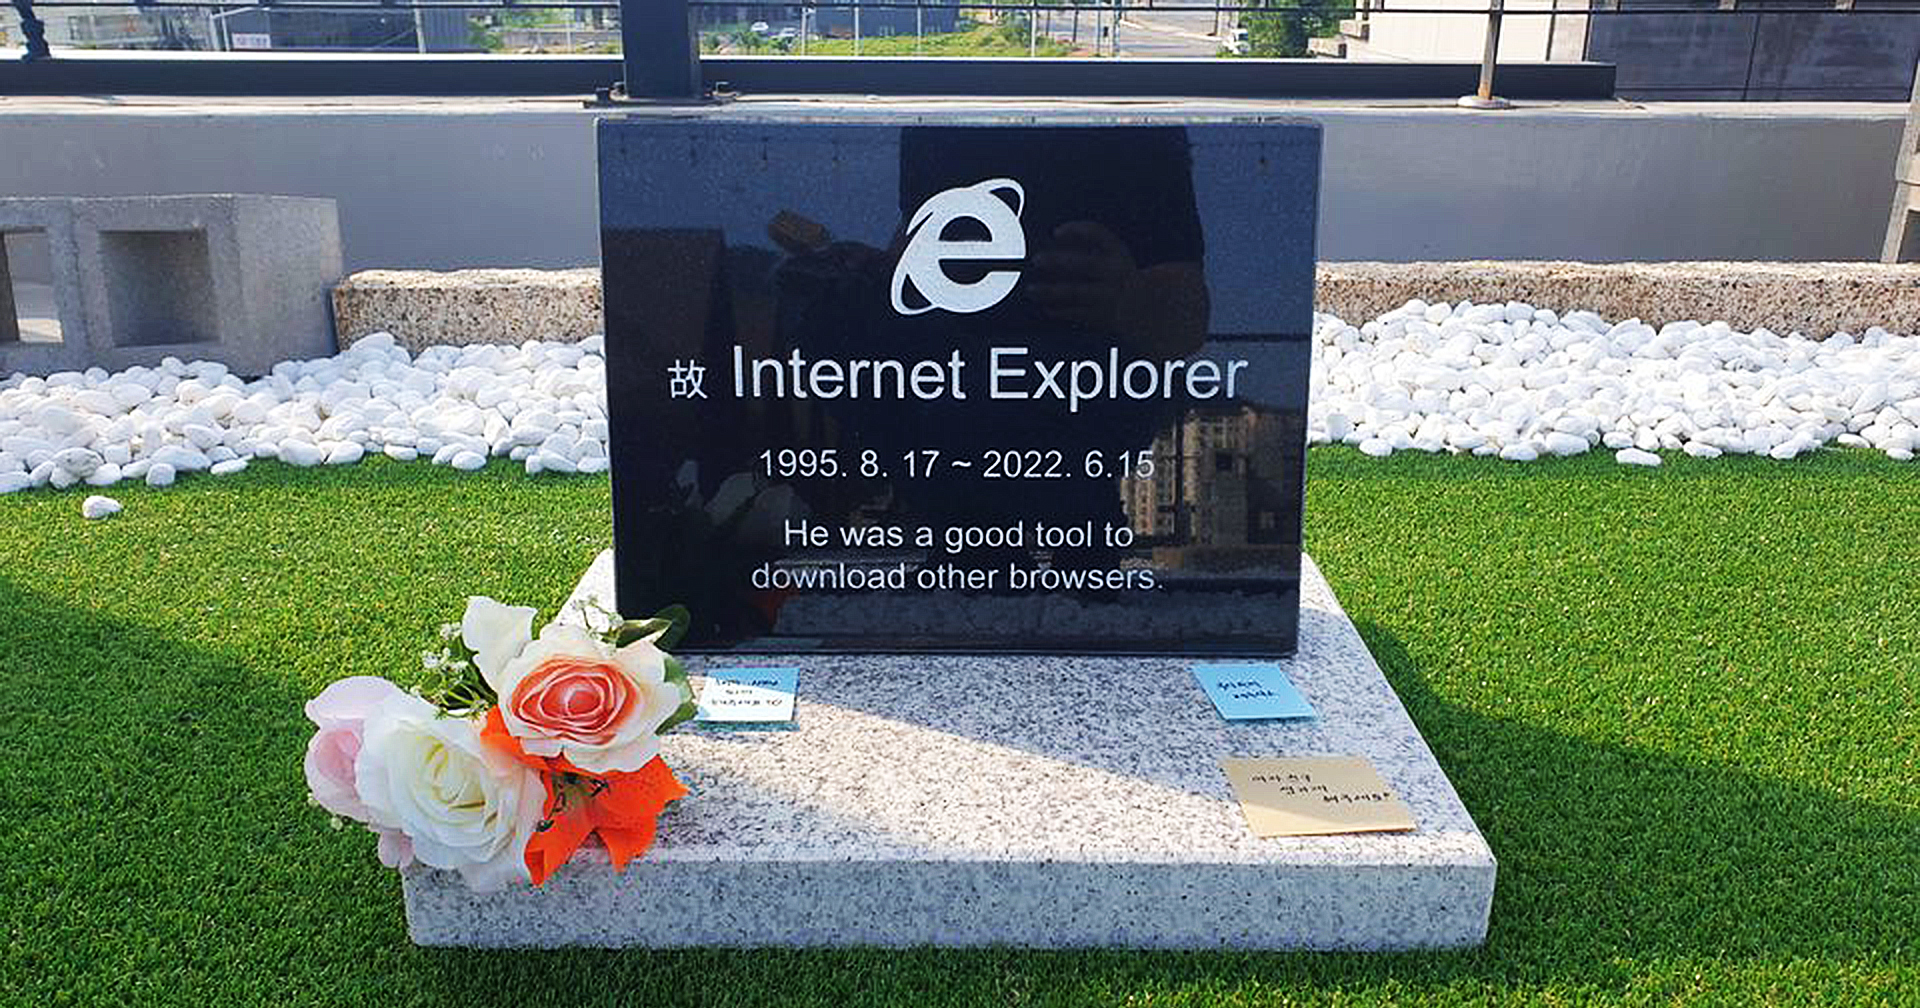 วิศวกรเกาหลีใต้สร้างป้ายหินไว้อาลัยการจากไปของ ‘Internet Explorer’